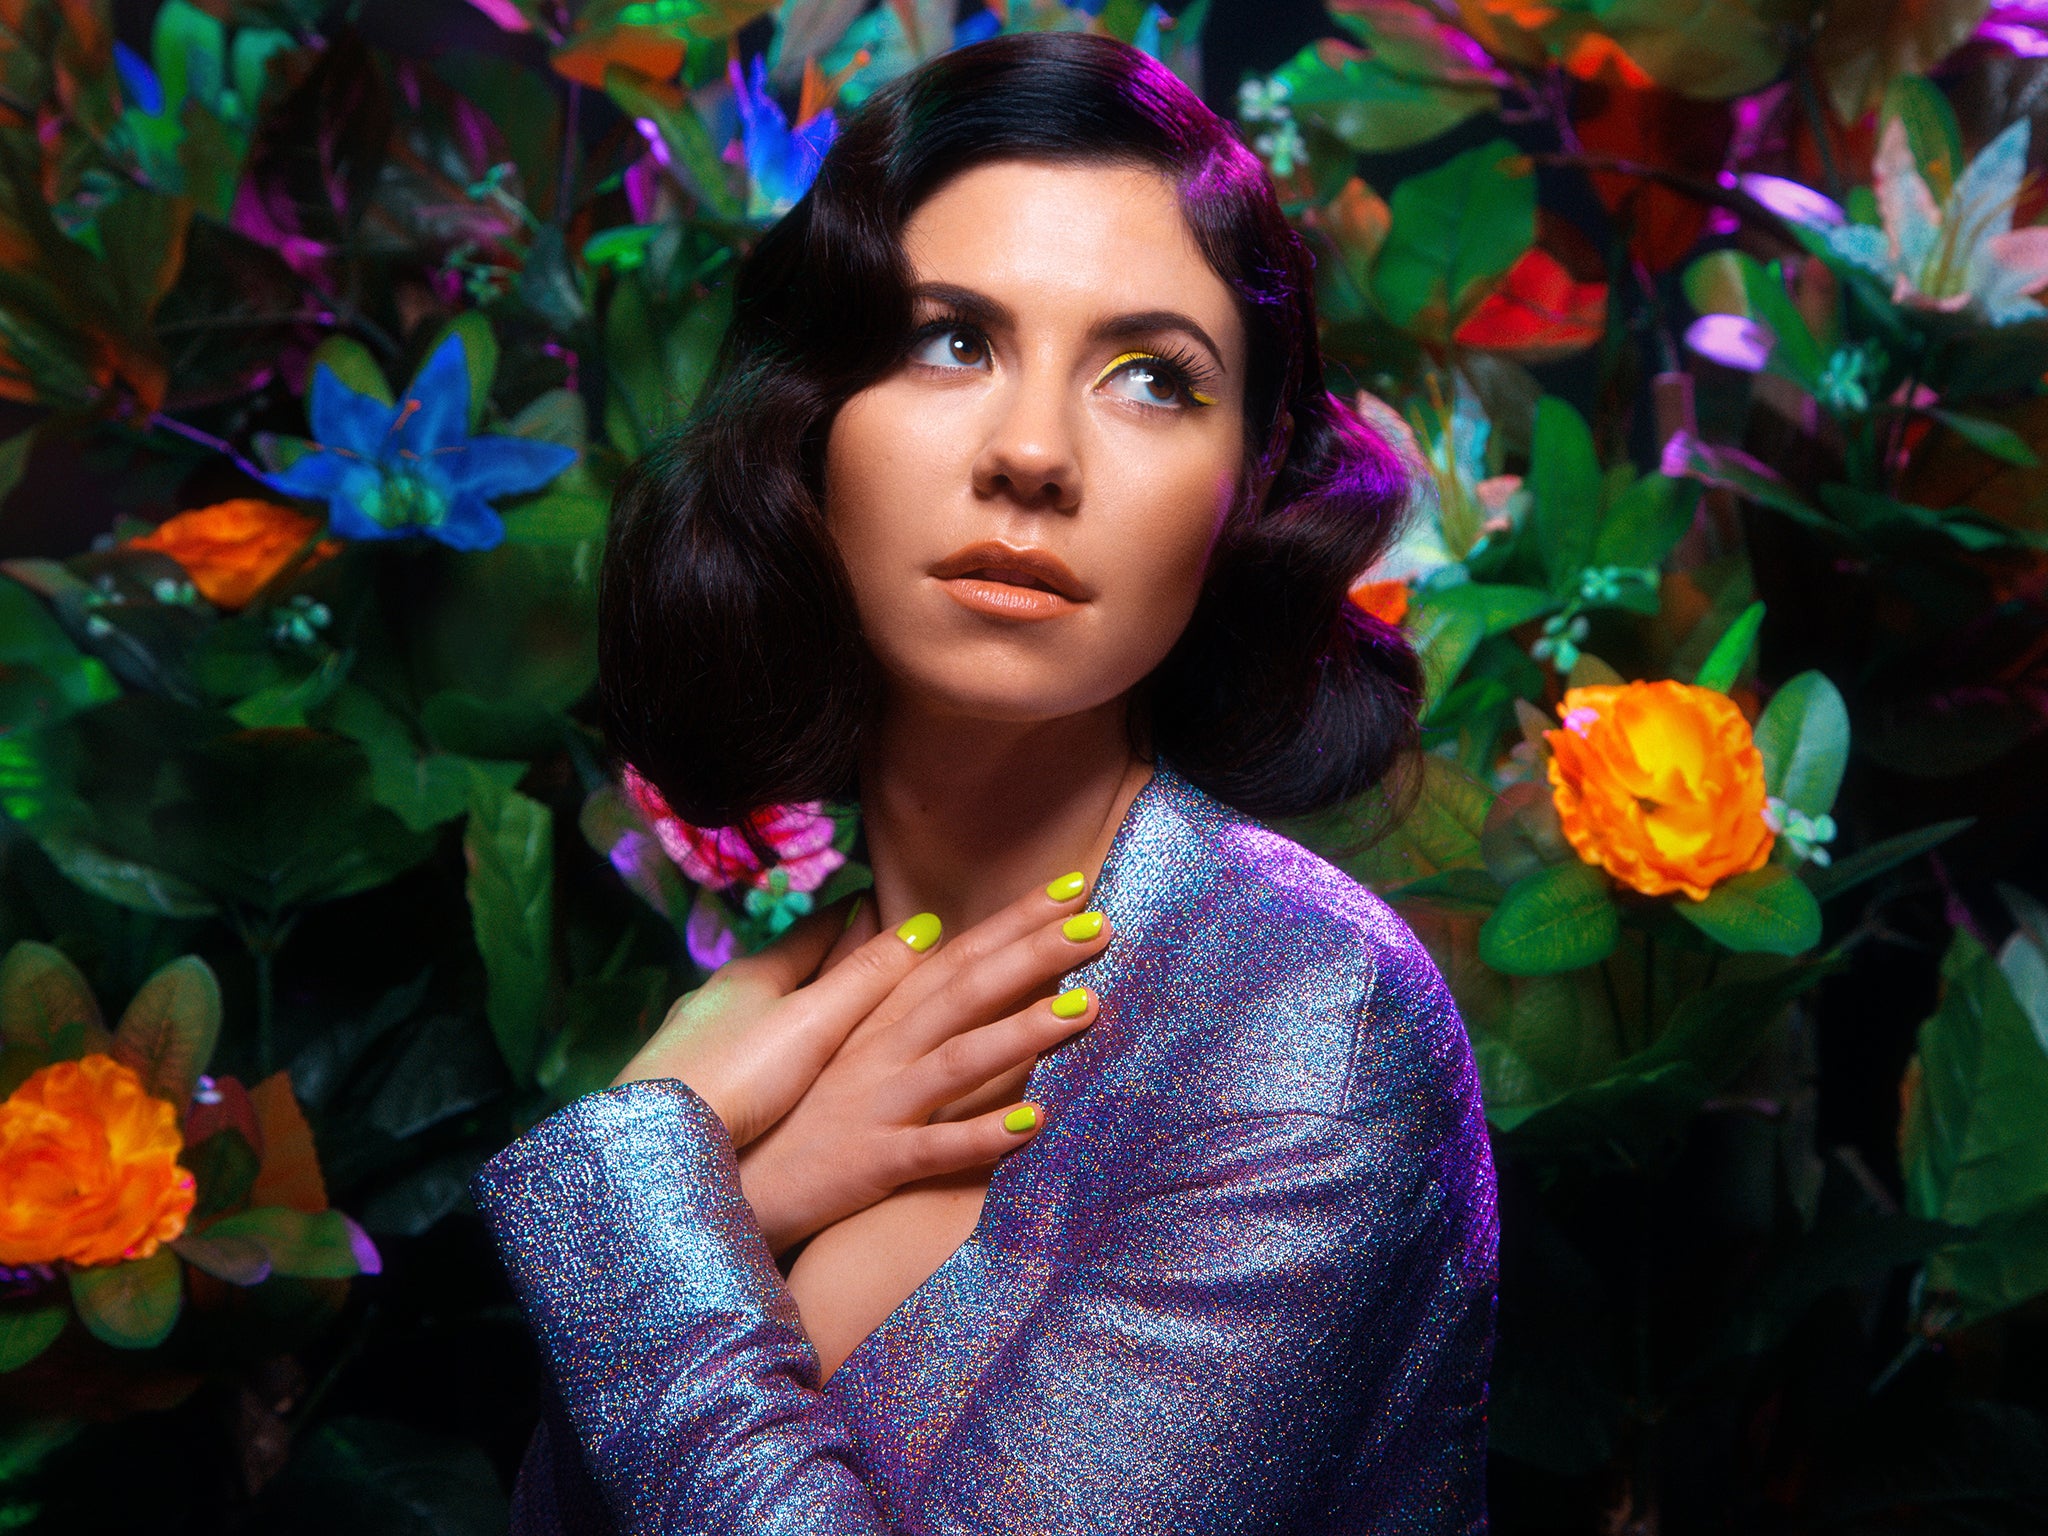 Marina And The Diamonds Charts